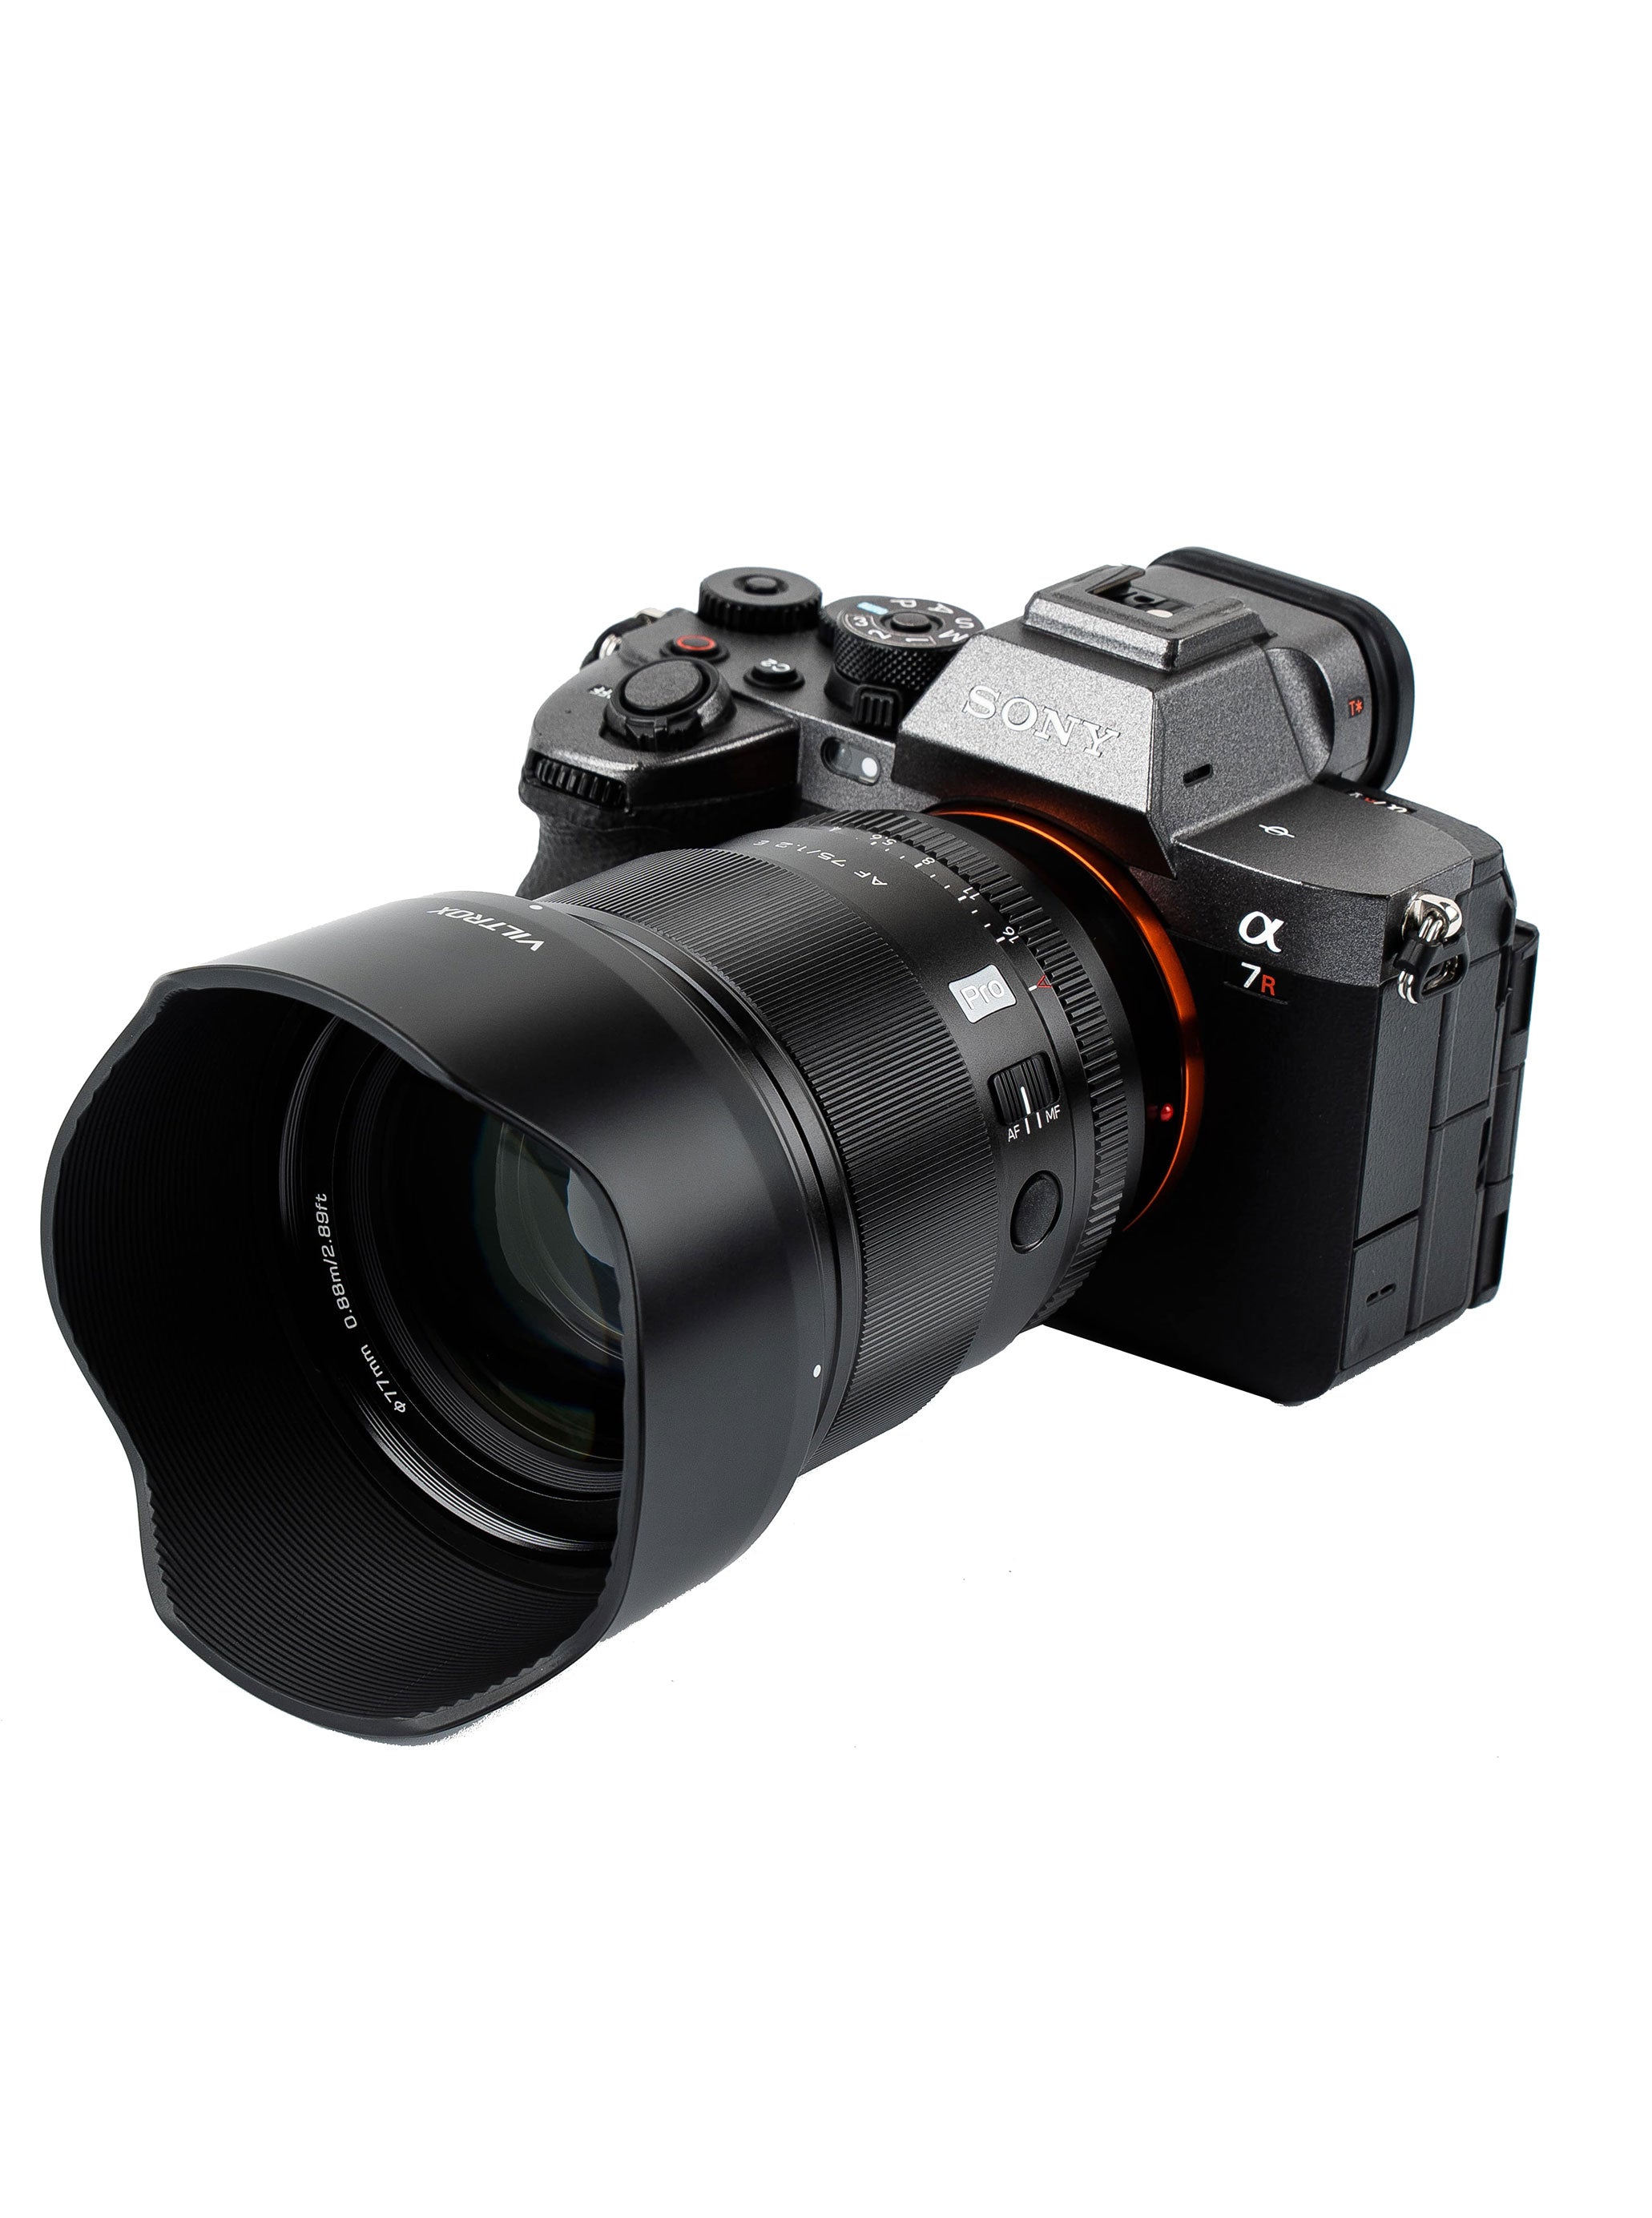 Bild 3 Pressemitteilung APS-C-Objektiv AF 75 mm F/1.2 Pro Sony E- oder Nikon Z-Mount